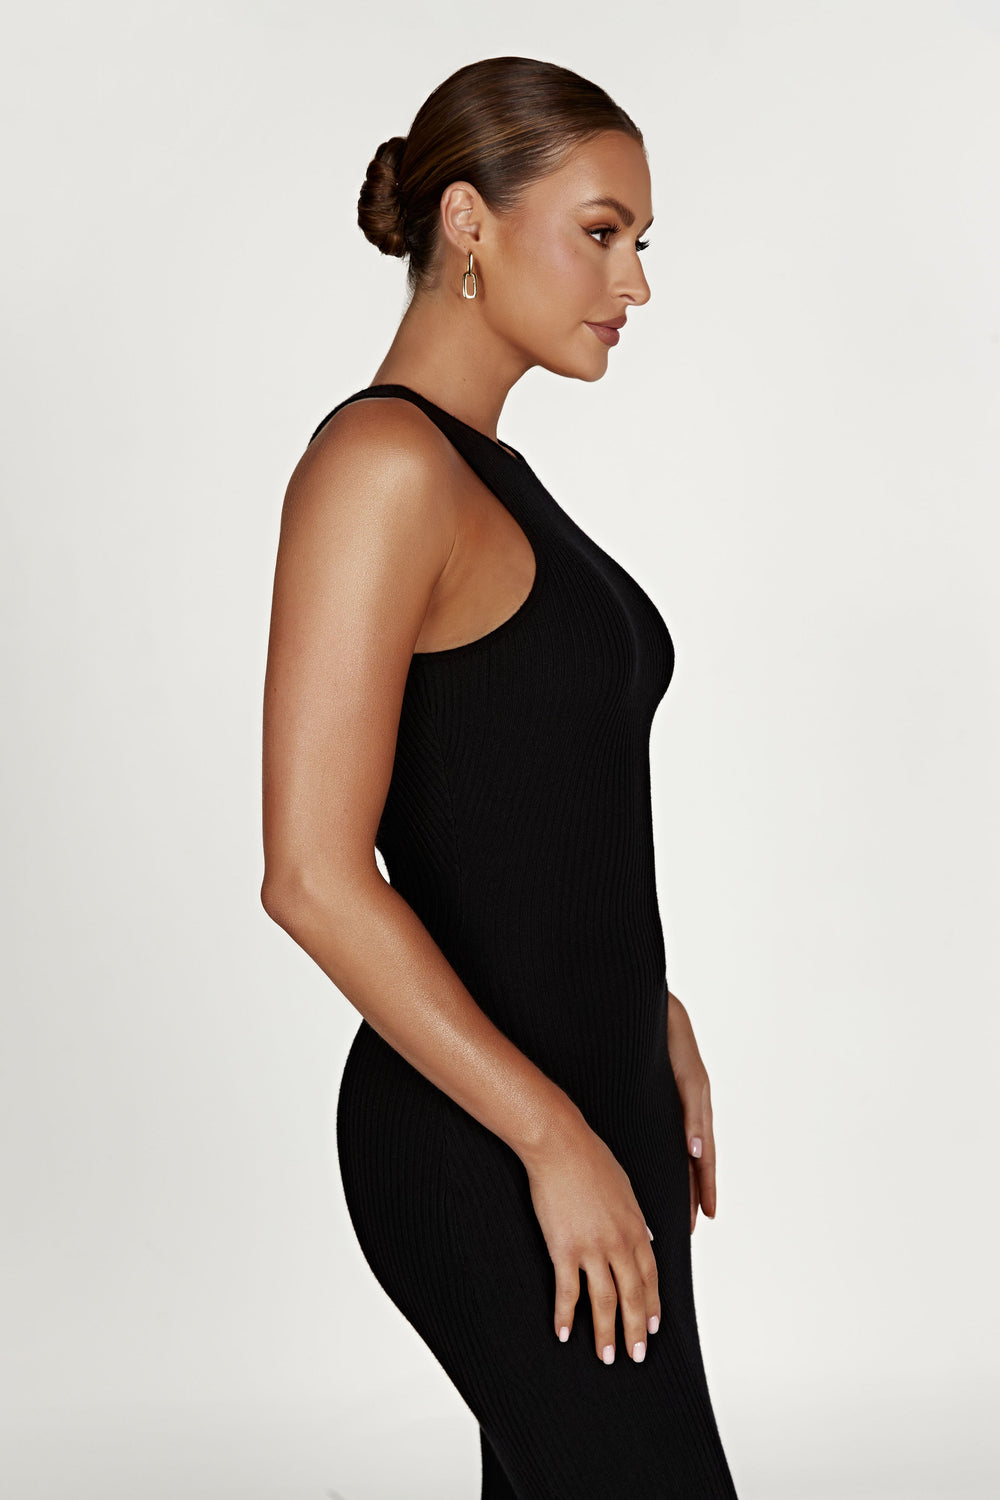 Sienna Knit Midi Dress - Black